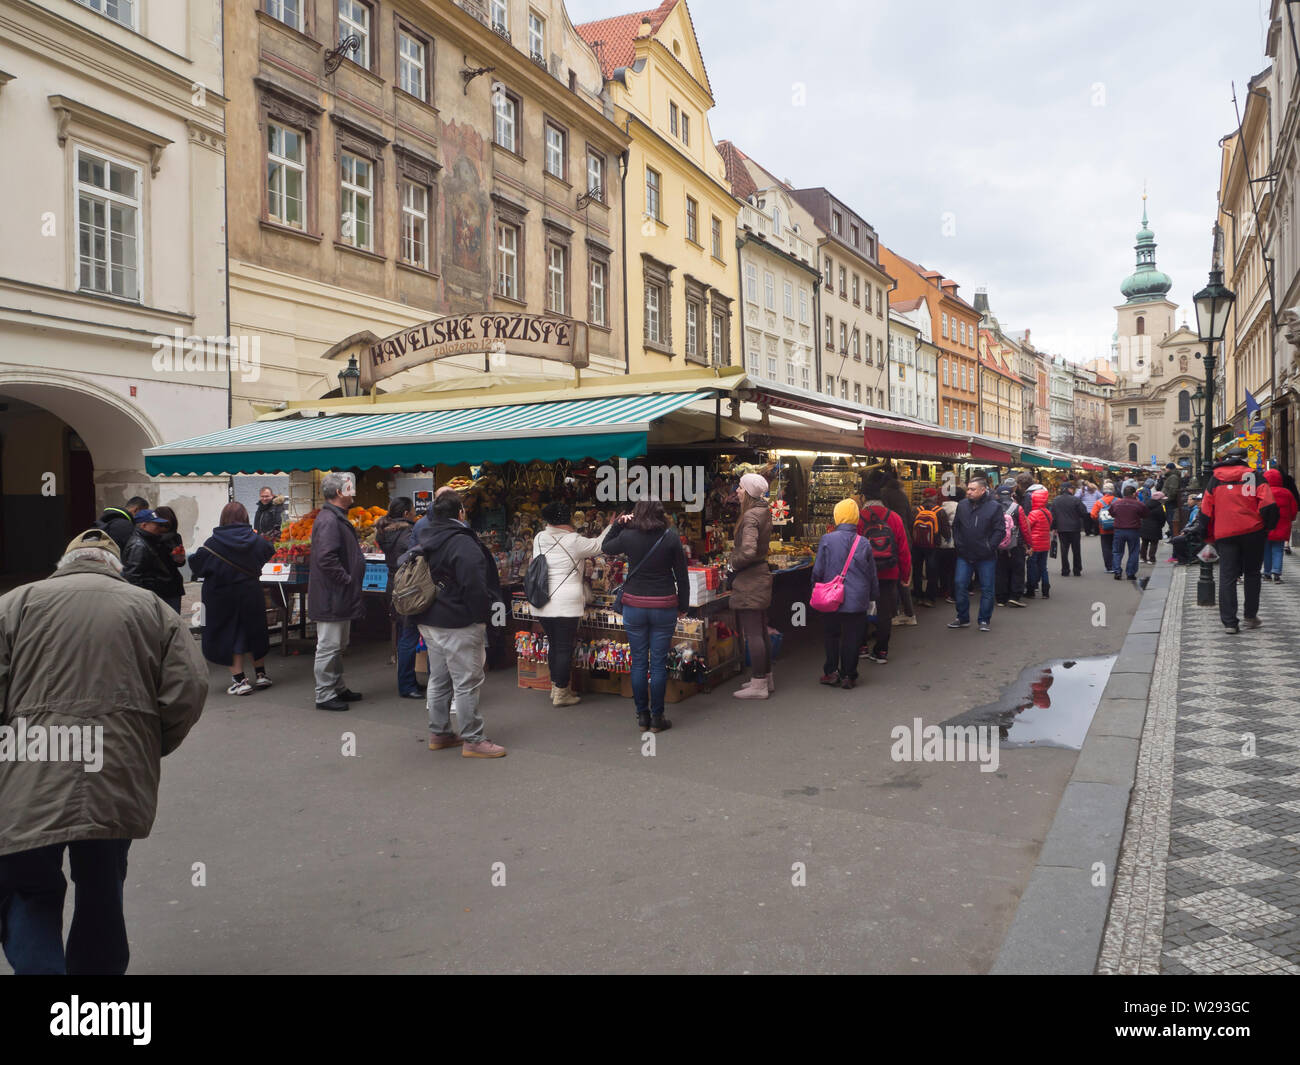 Havelské tržiště, a street market with century old traditions in the old town, Staré Město, in Prague Czech Republic Stock Photo